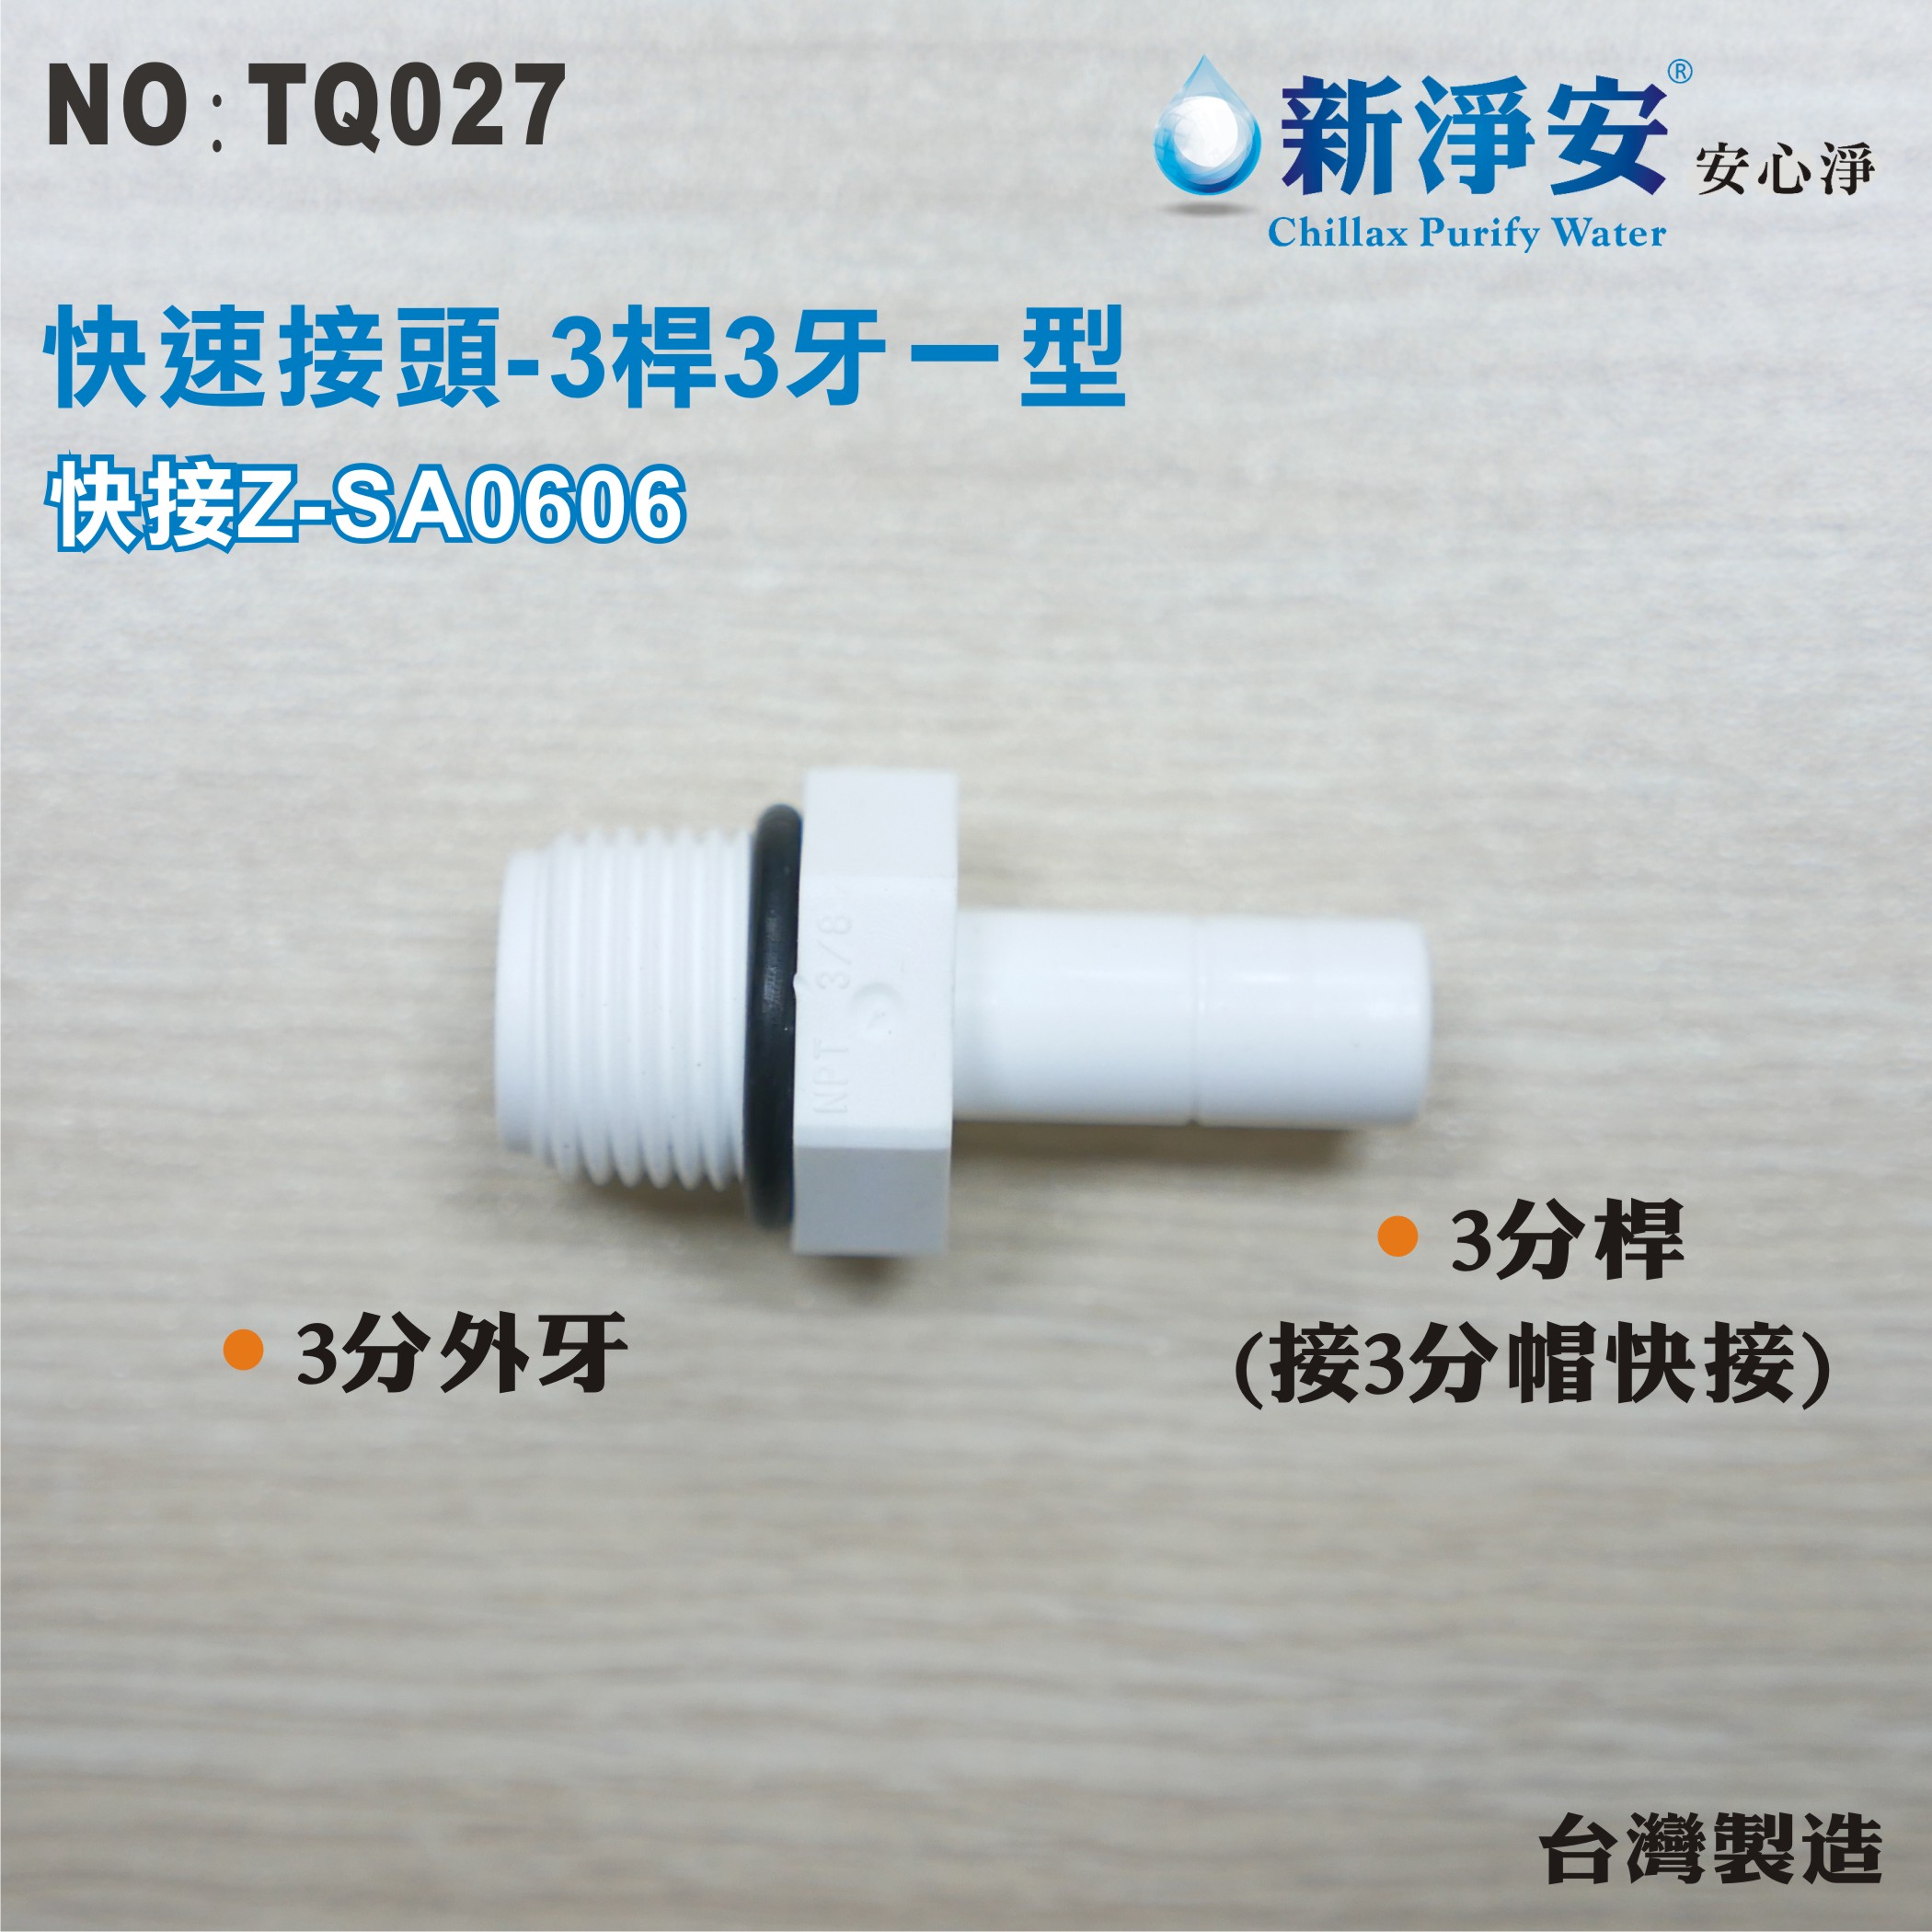 【龍門淨水】快速接頭 Z-SA0606 3分桿-3分外牙一型接頭 3桿3牙直塑膠接頭 台灣製造 直購價30元(TQ027)